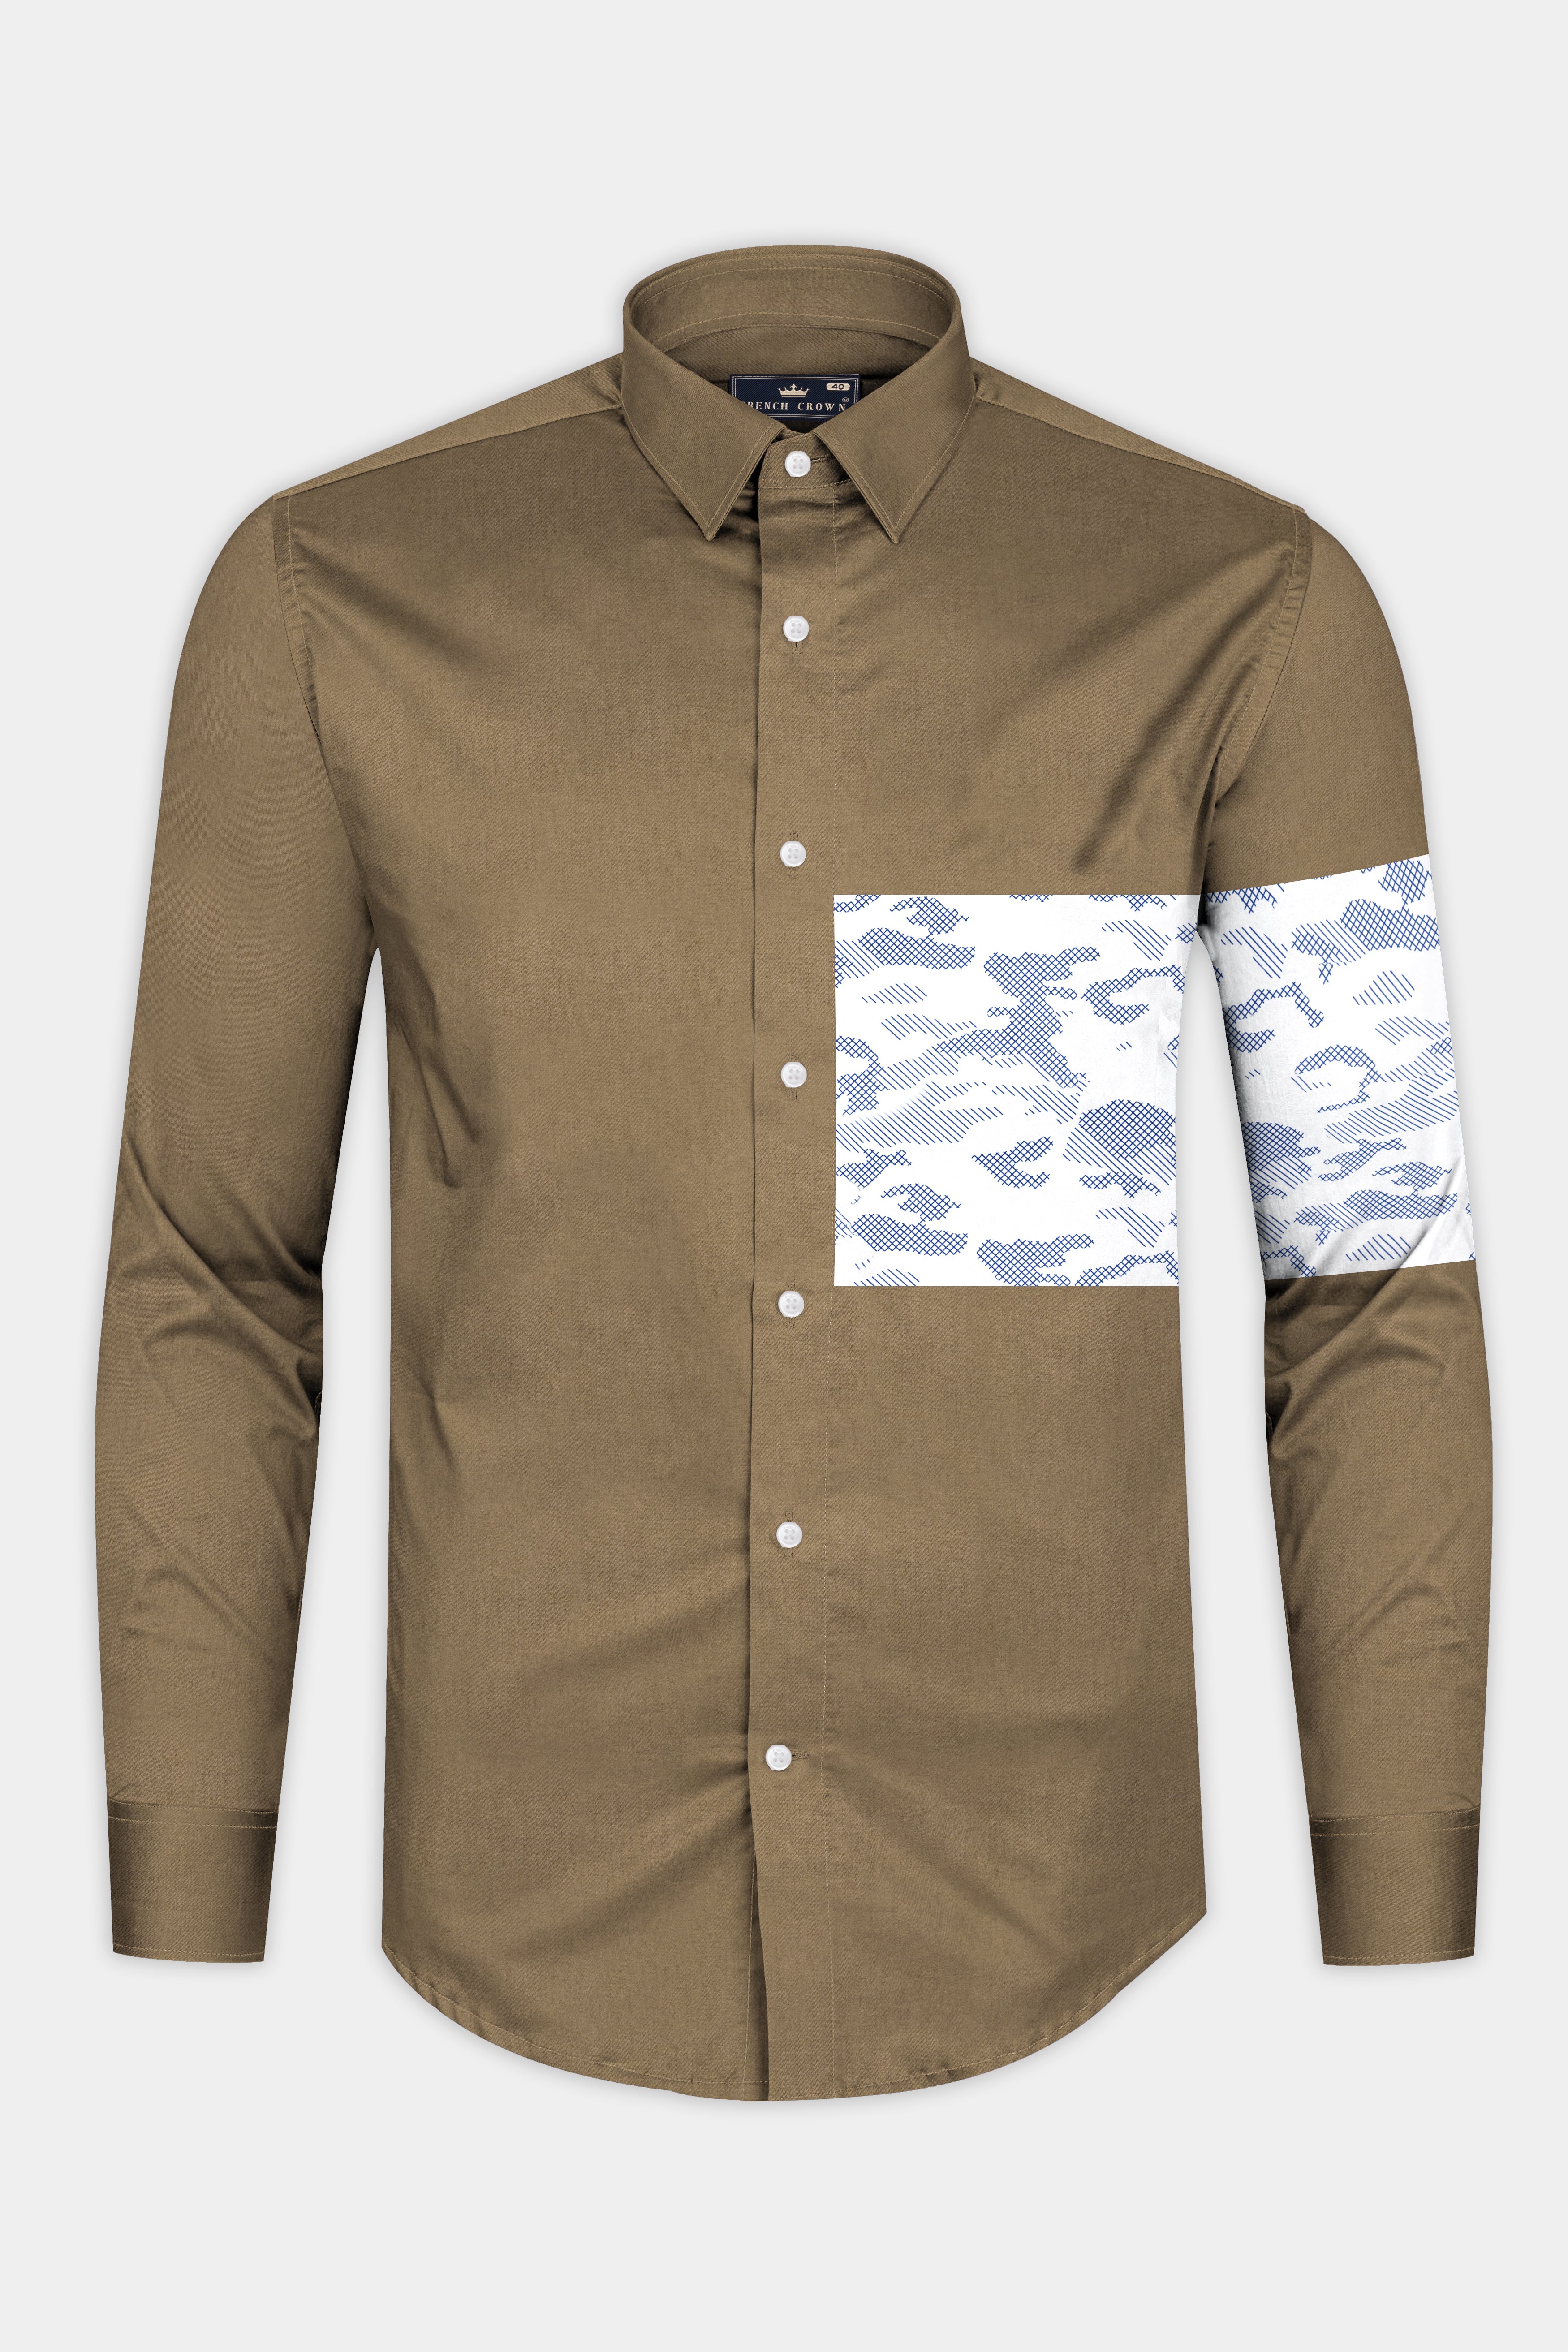 Hemlock Brown with Bright White Stitched Design Super Soft Premium Cotton Designer Shirt.